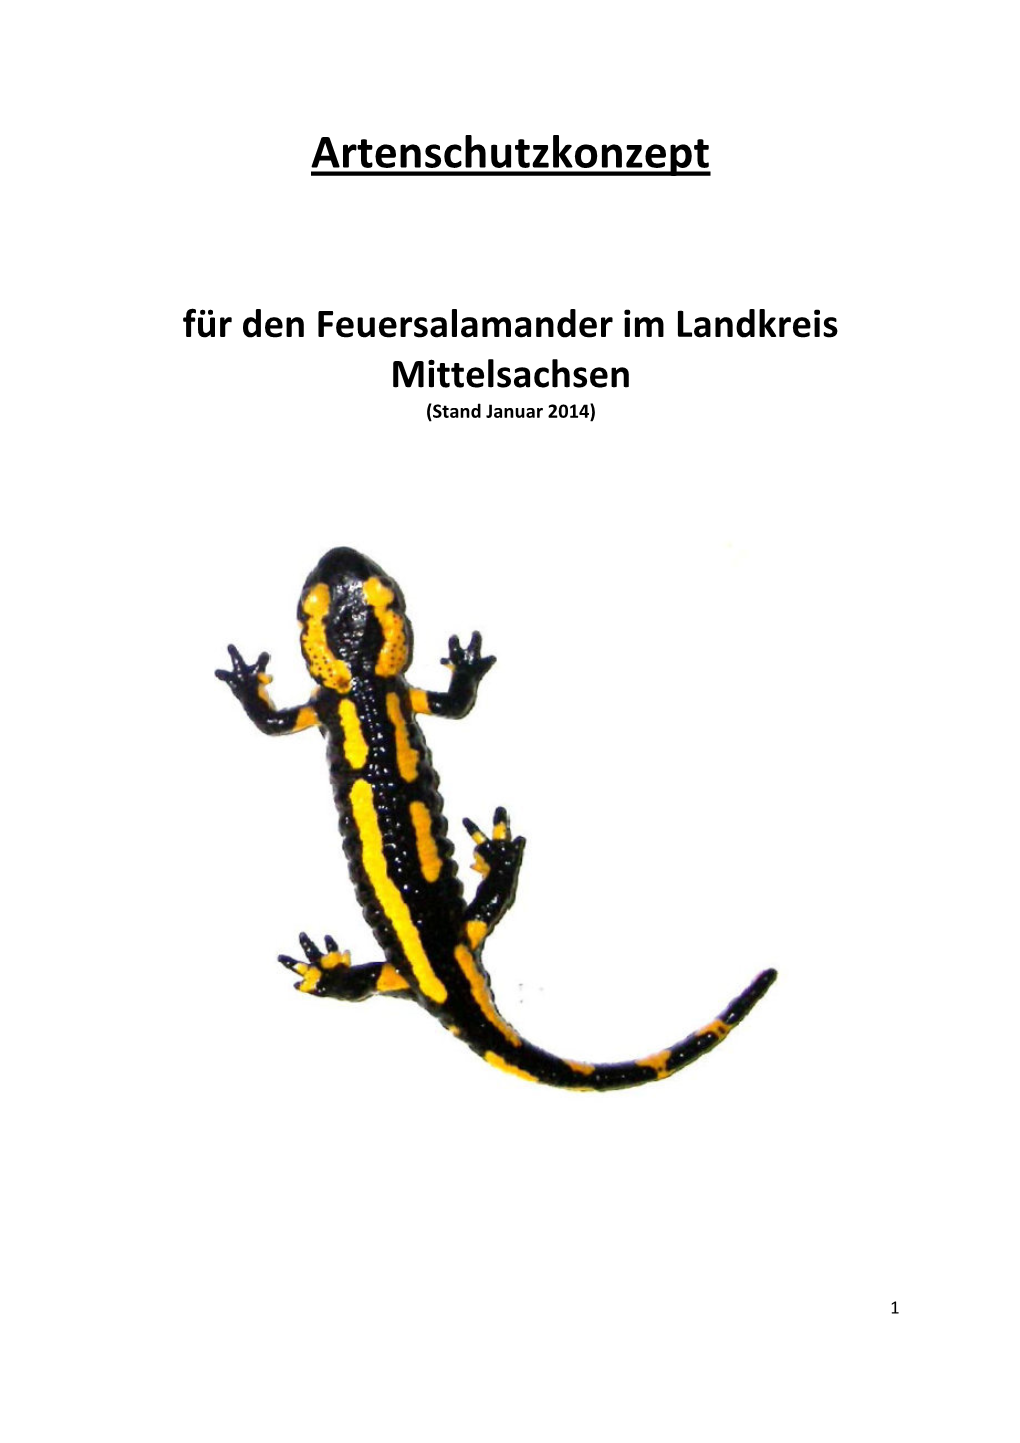 Artenschutzkonzept Feuersalamander (PDF)